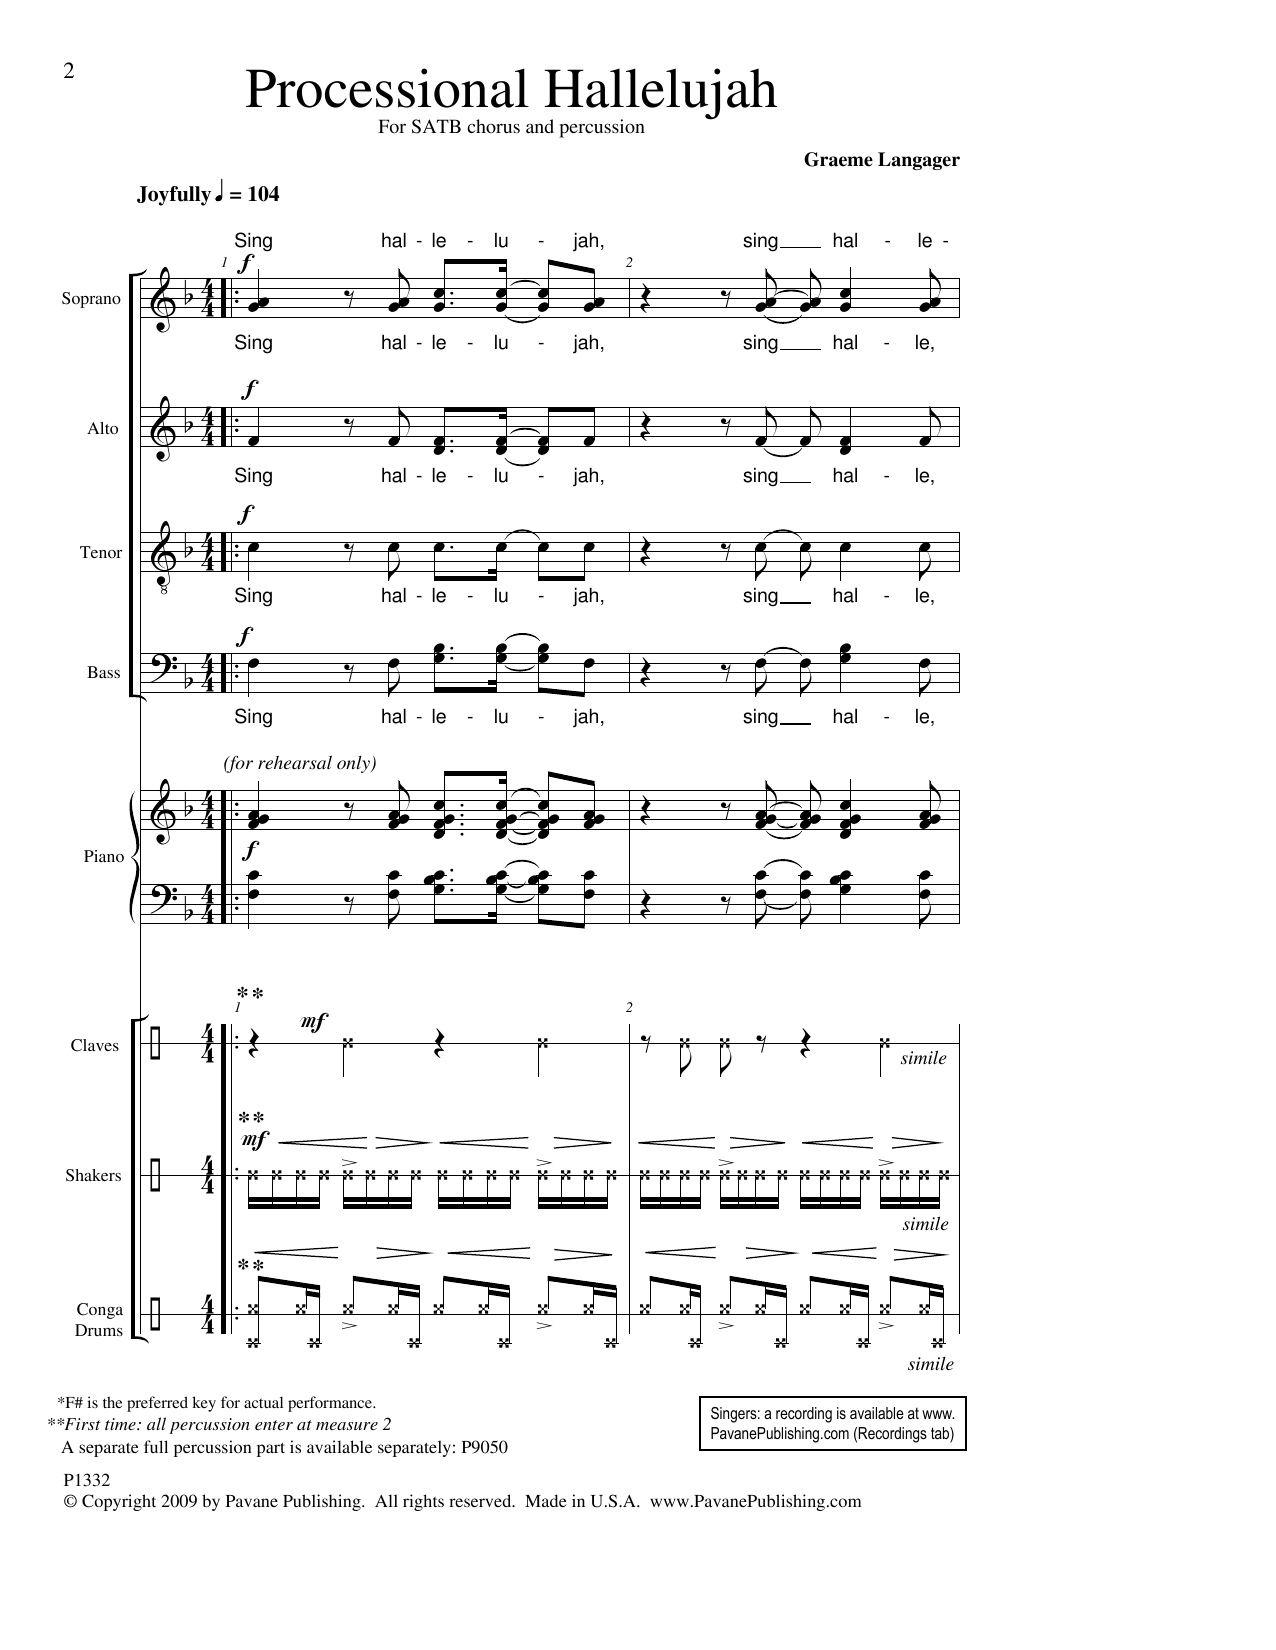 Download Graeme Langager Processional Hallelujah Sheet Music